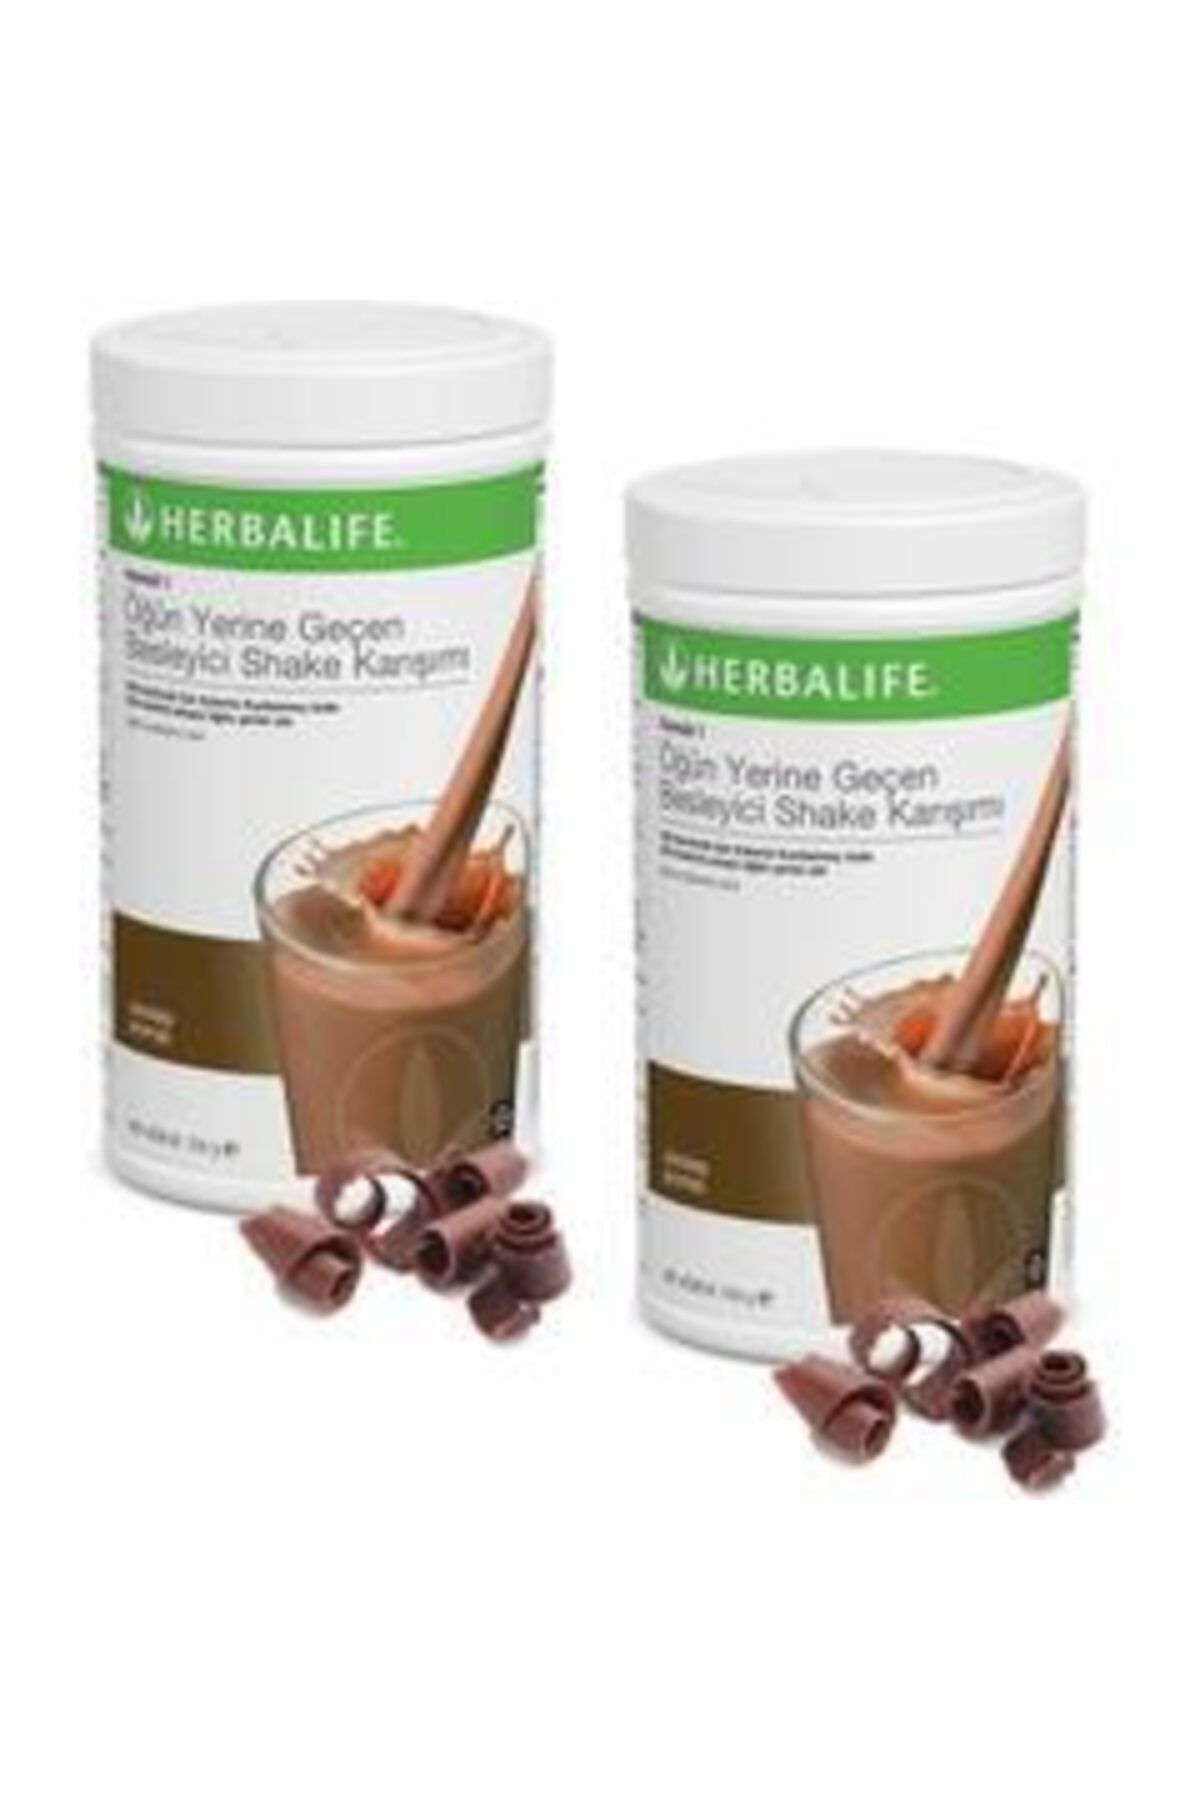 Herbalife Formül 1 Öğün Yerine Geçen Besleyici Shake Karışımı Çikolata Aromalı